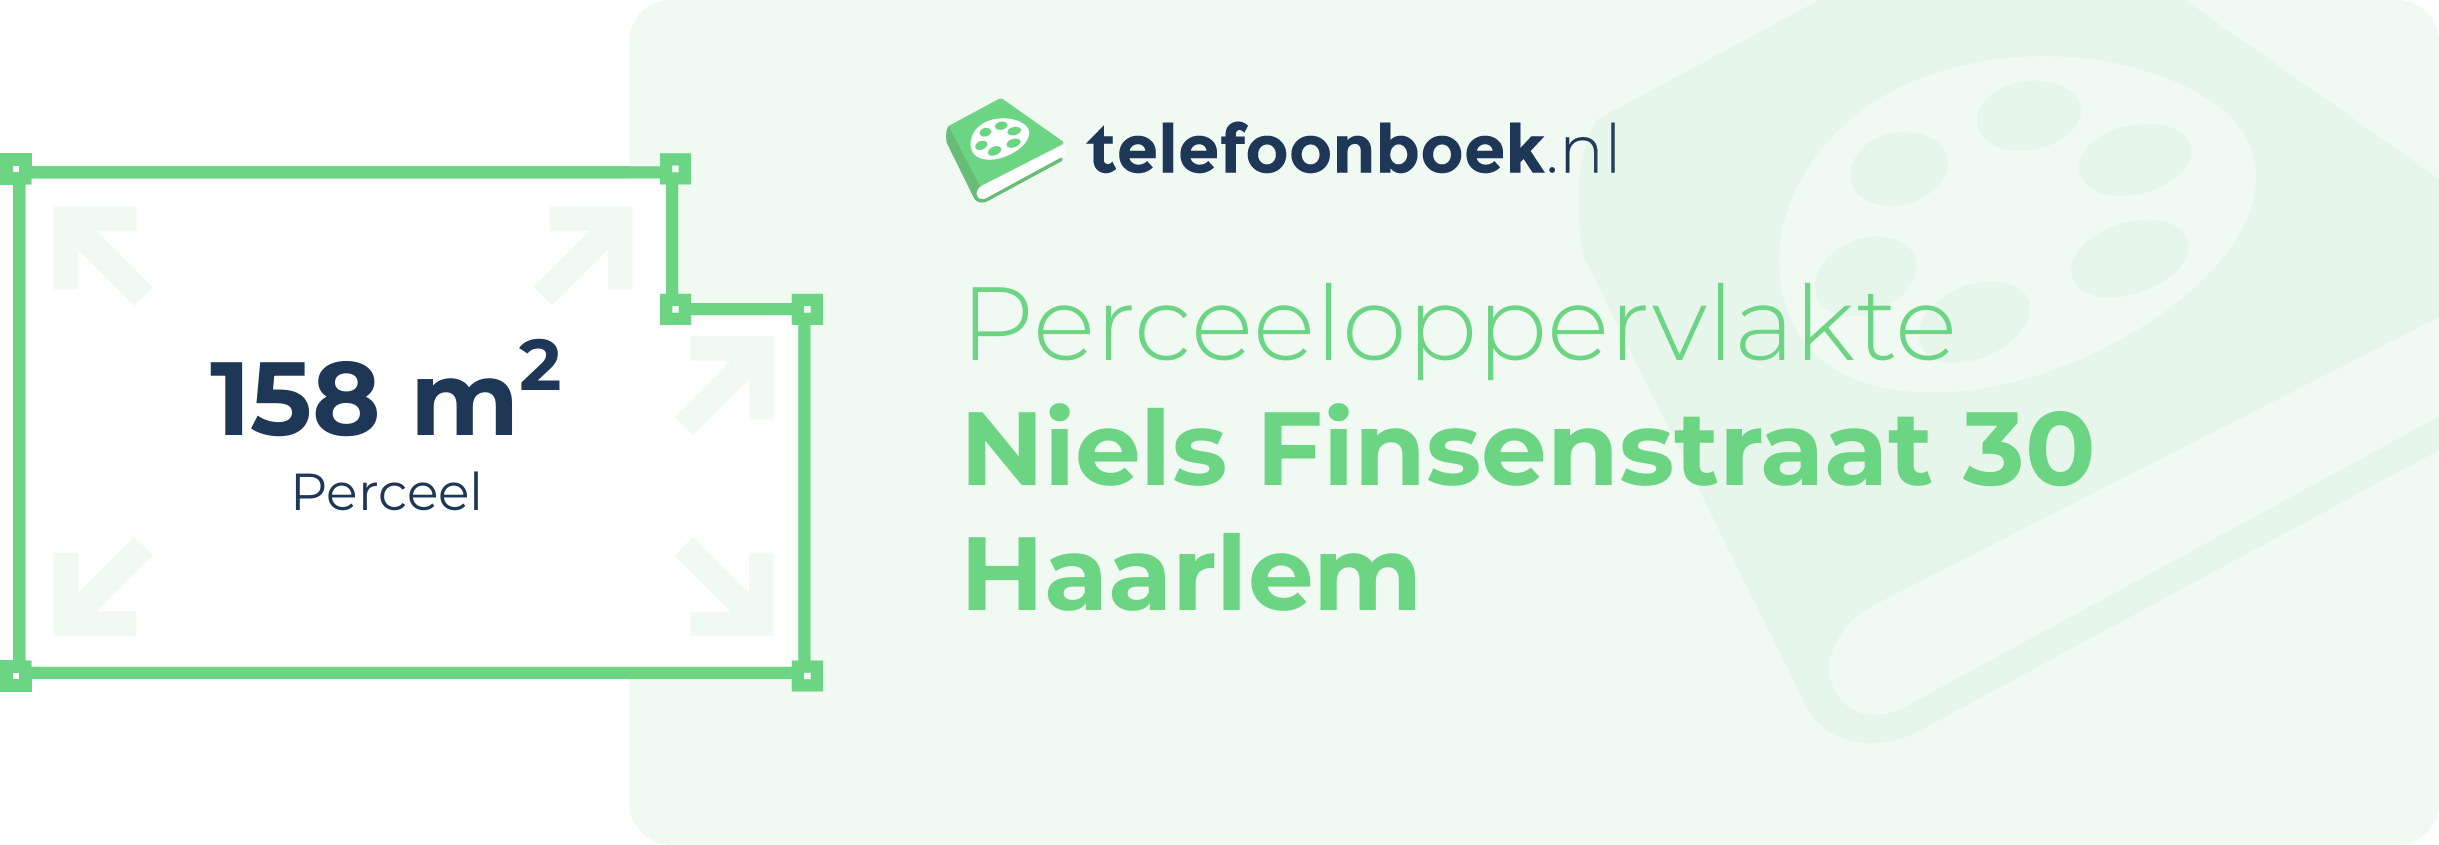 Perceeloppervlakte Niels Finsenstraat 30 Haarlem